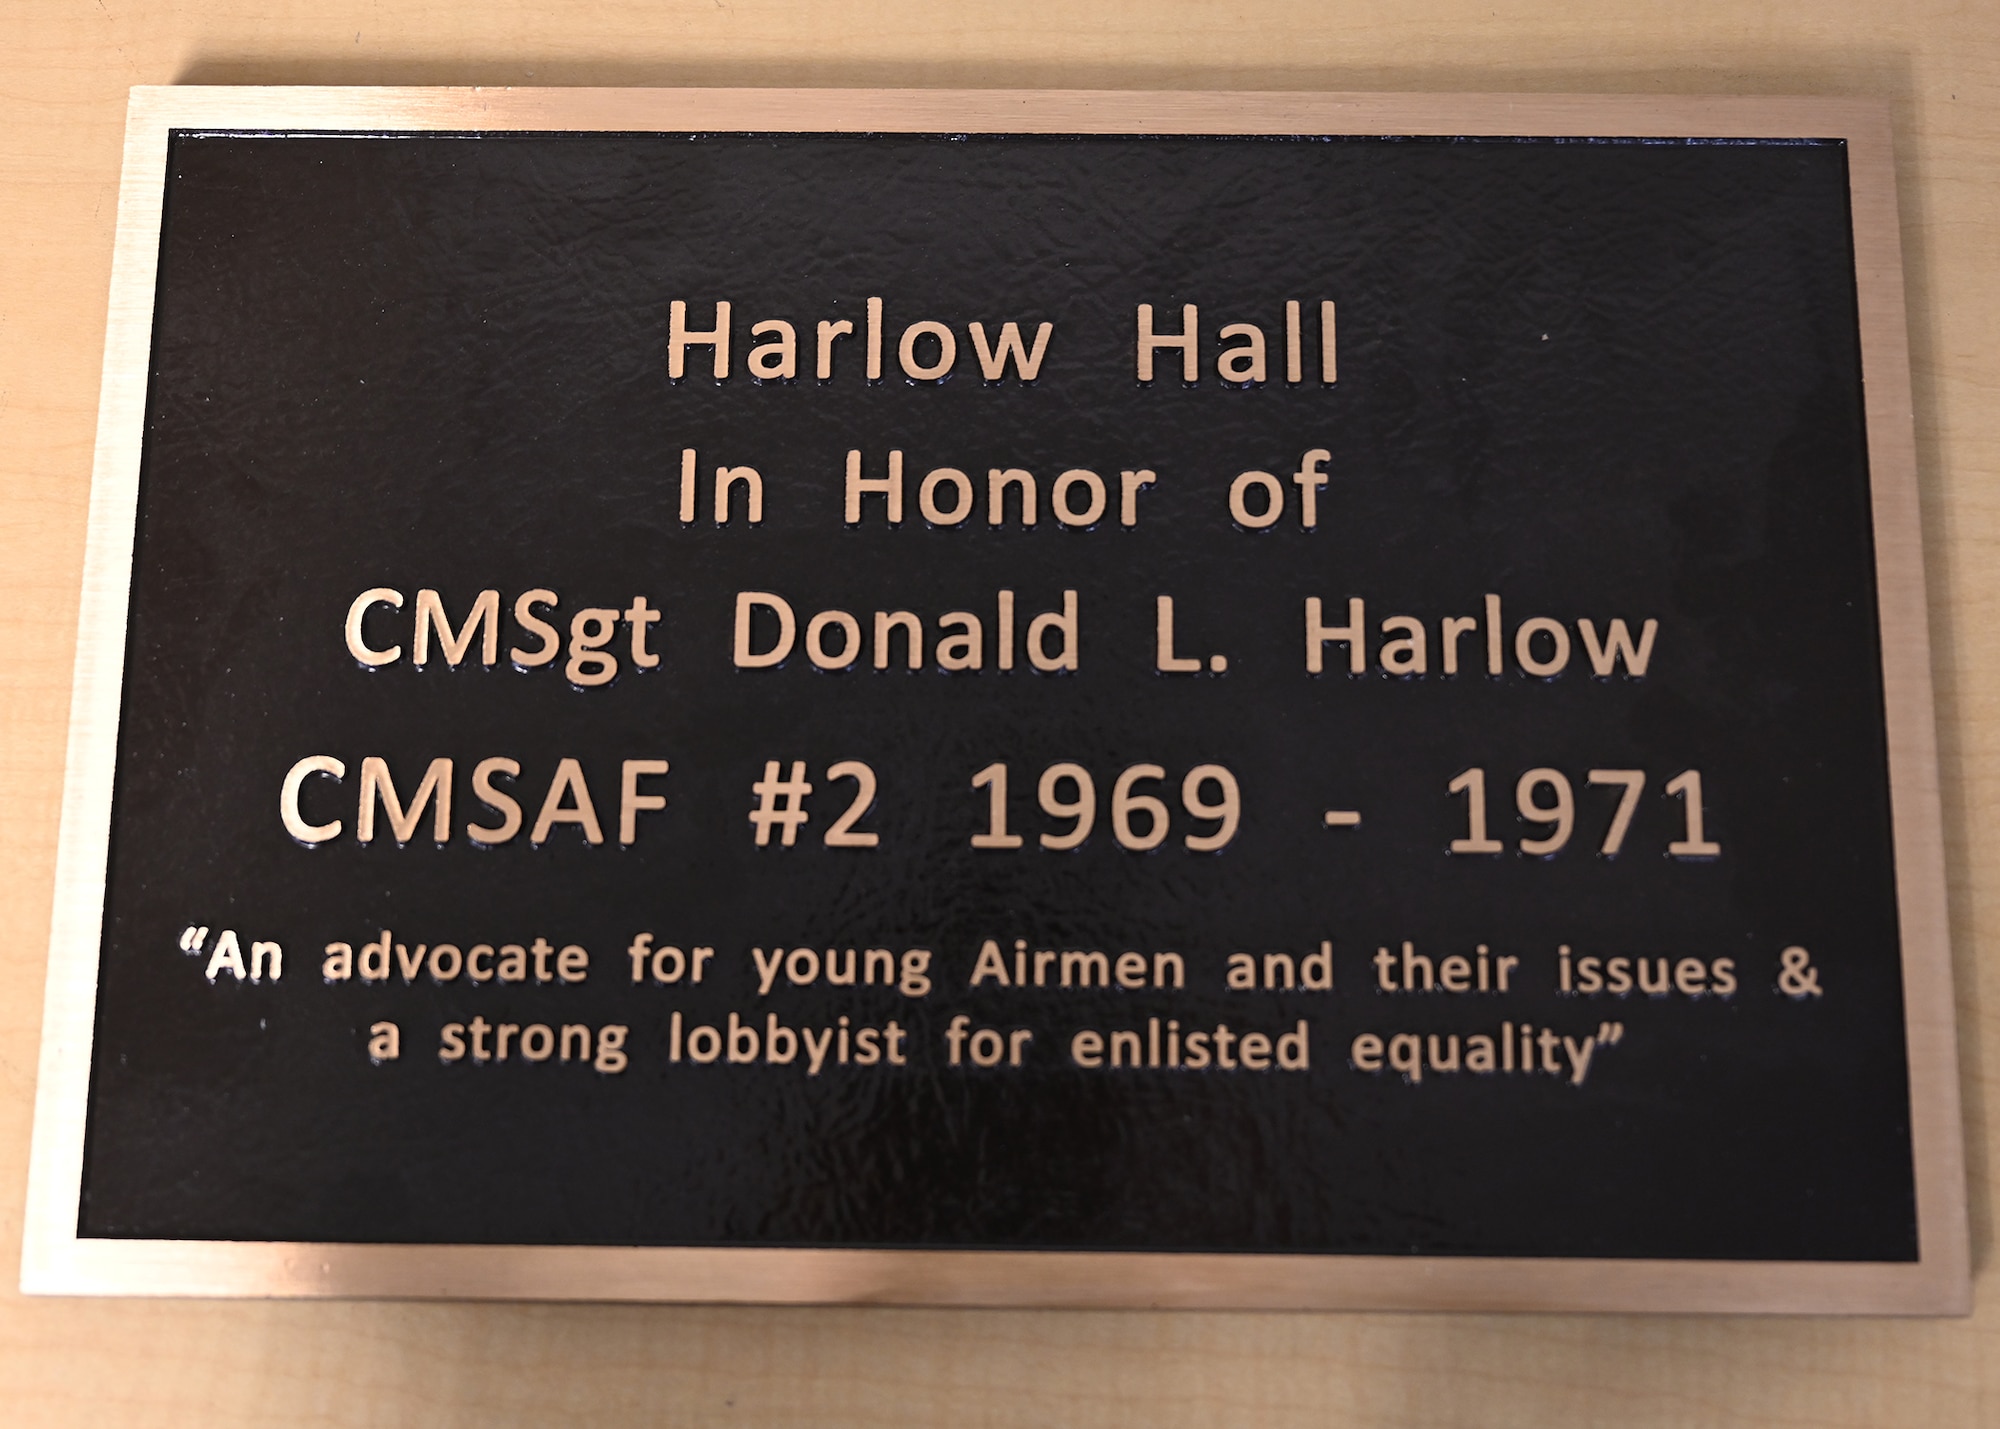 honorific plaque